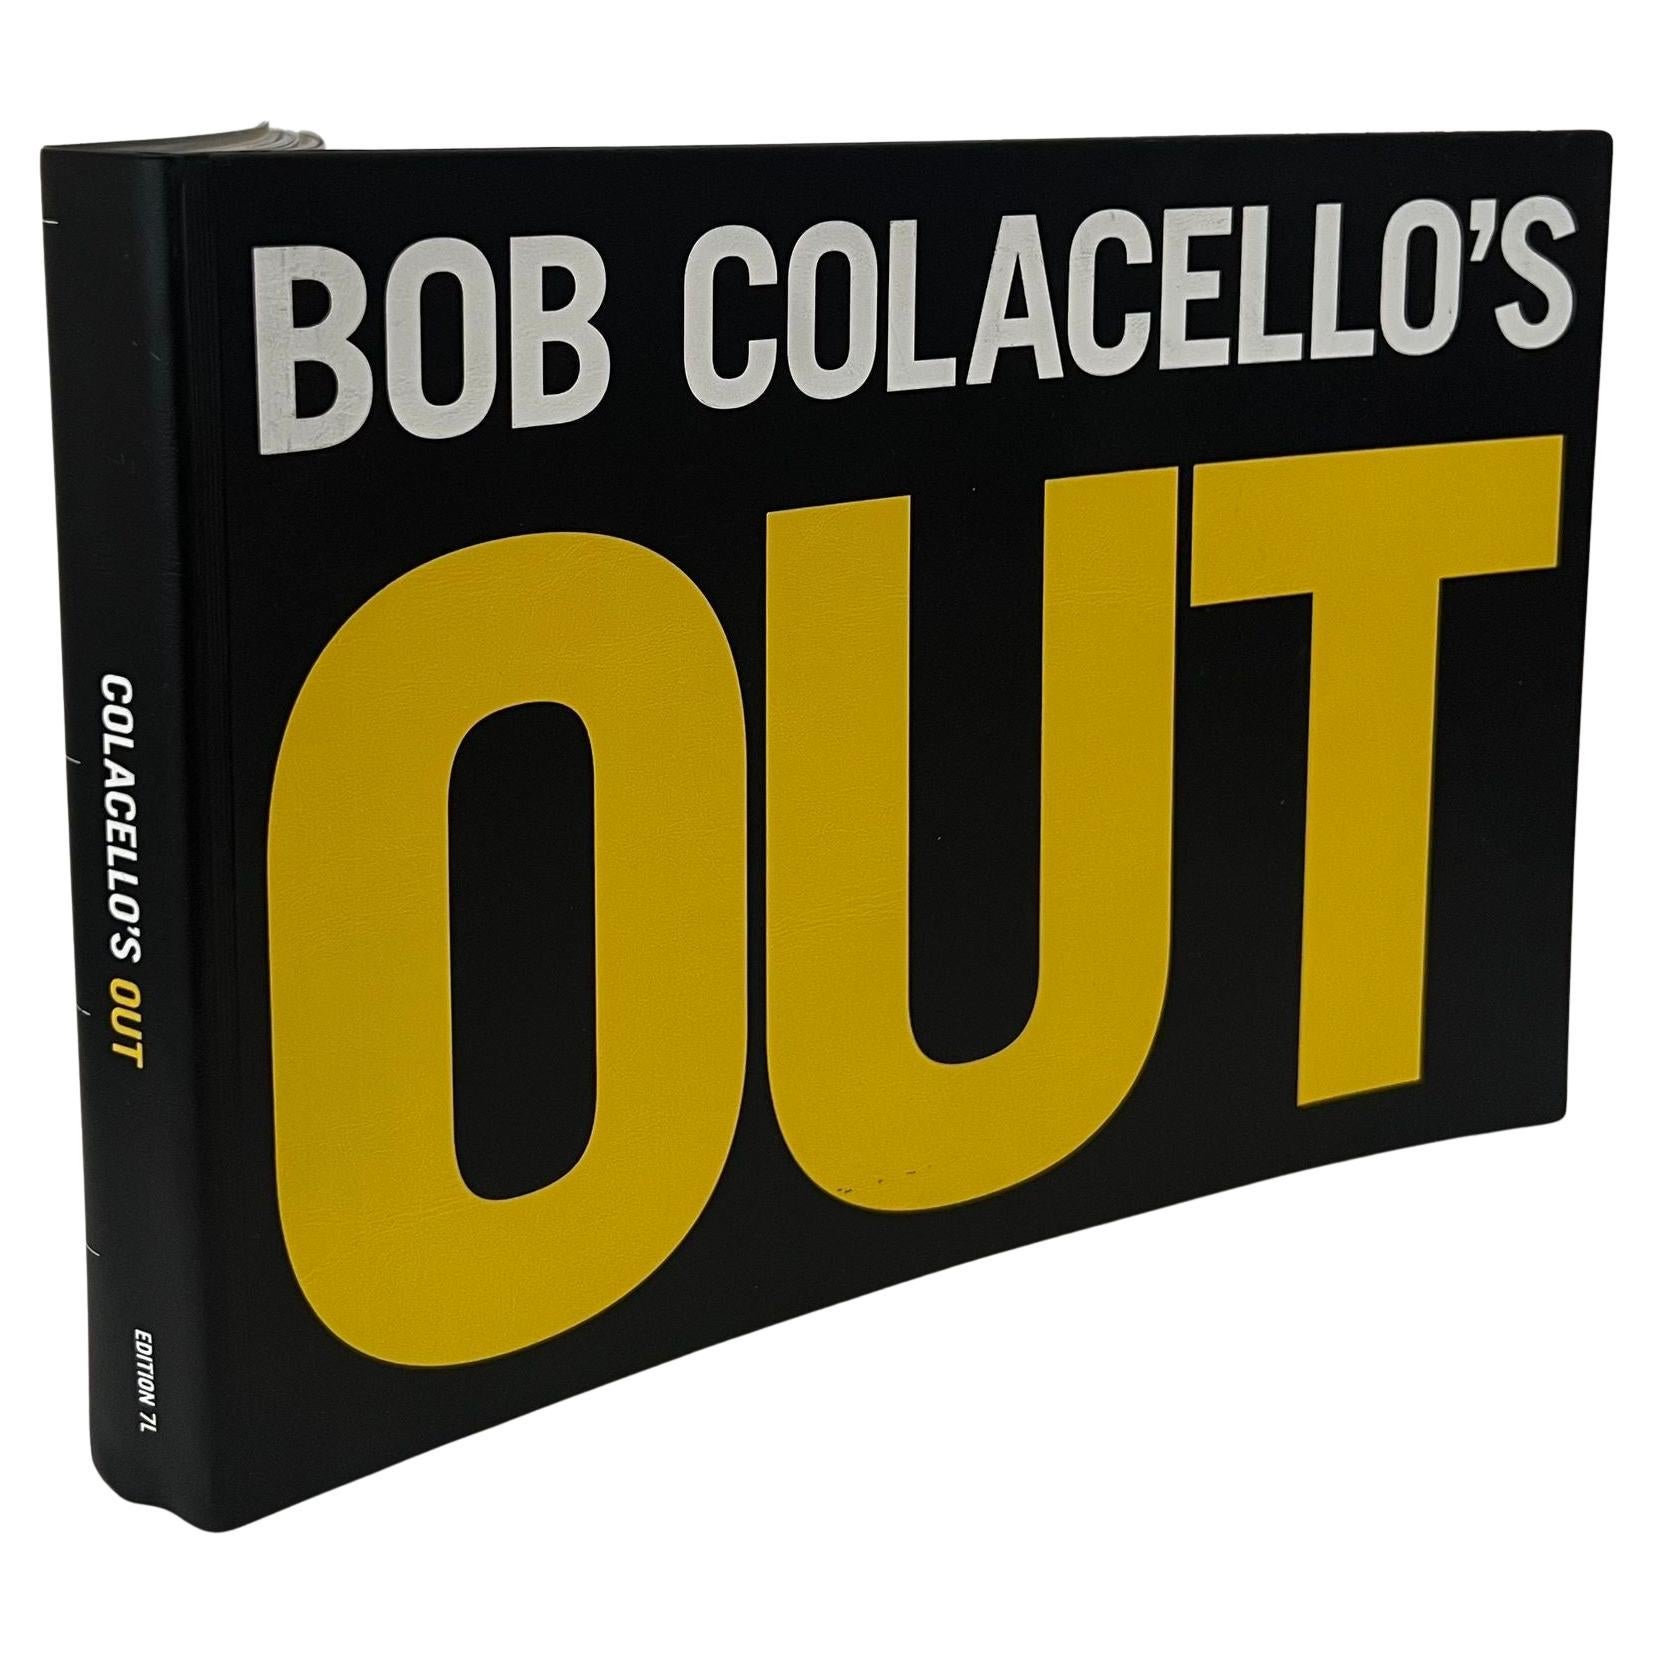 Bob Colacello's Out: Out 2007 By Bob Colacello Photographer